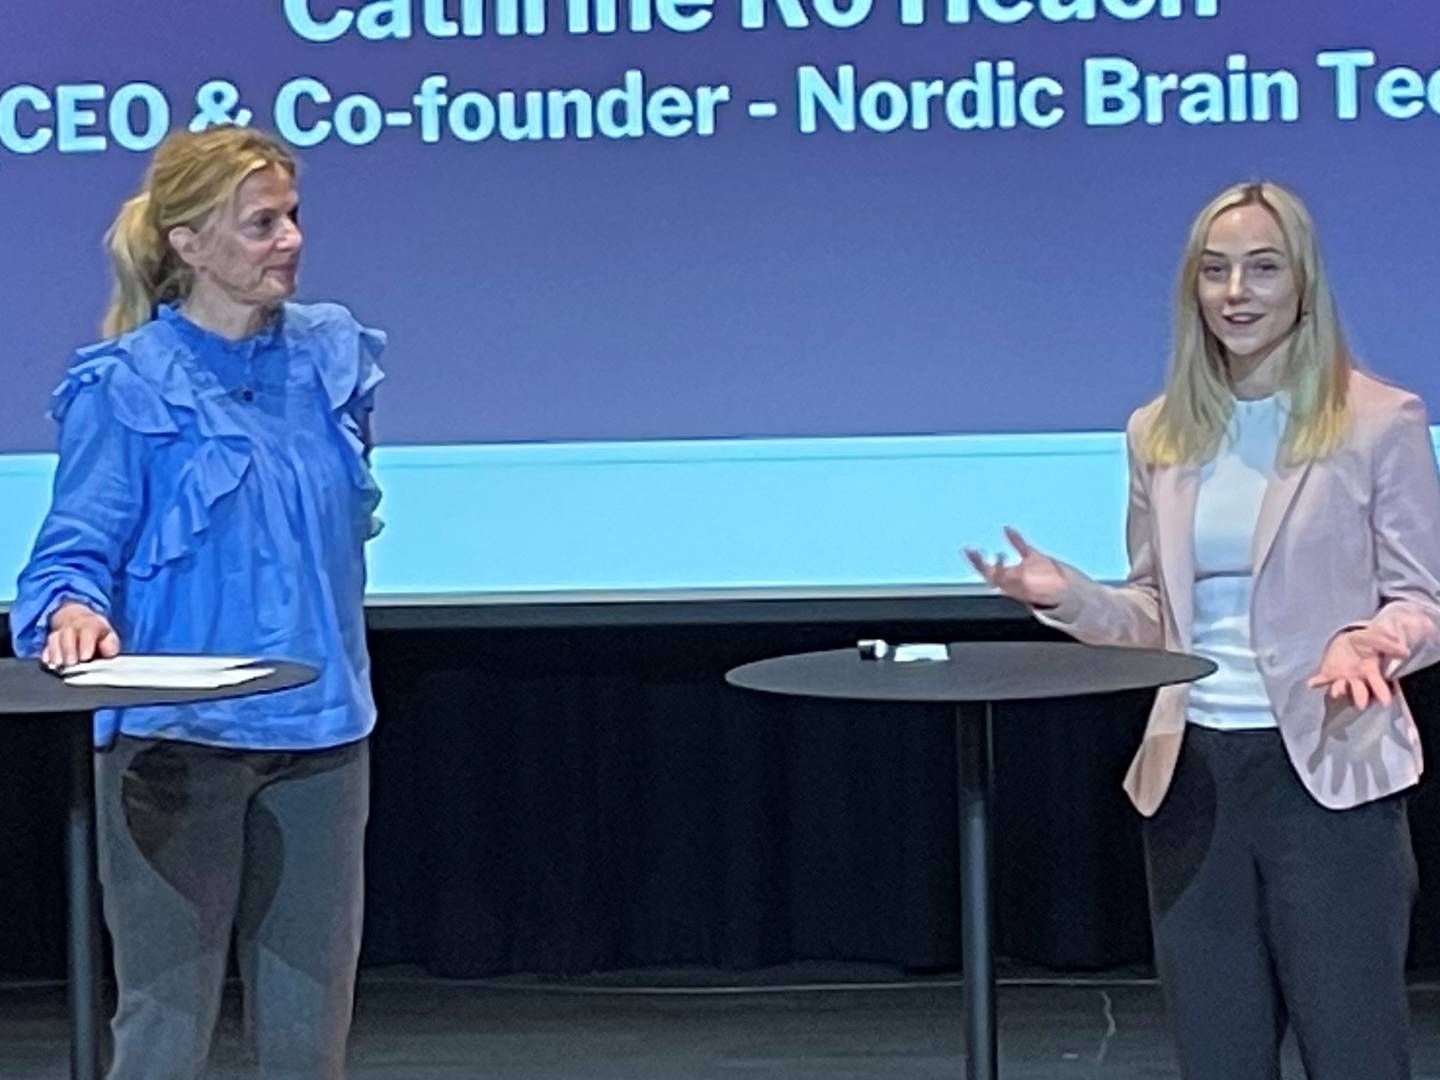 «IKKE TILRETTELAGT»: – Det er ikke så mange ting som ligger til rette for at vi skal lykkes, i hvert fall ikke her, uten et hjemmemarked eller en refusjonsordning, så det pusher oss til å se til utlandet, sier Cathrine Ro Heuch fra Norway Brain Tech (til høyre) her sammen med Lena Nymo Helli. | Foto: Sebastian Brauer Hagel